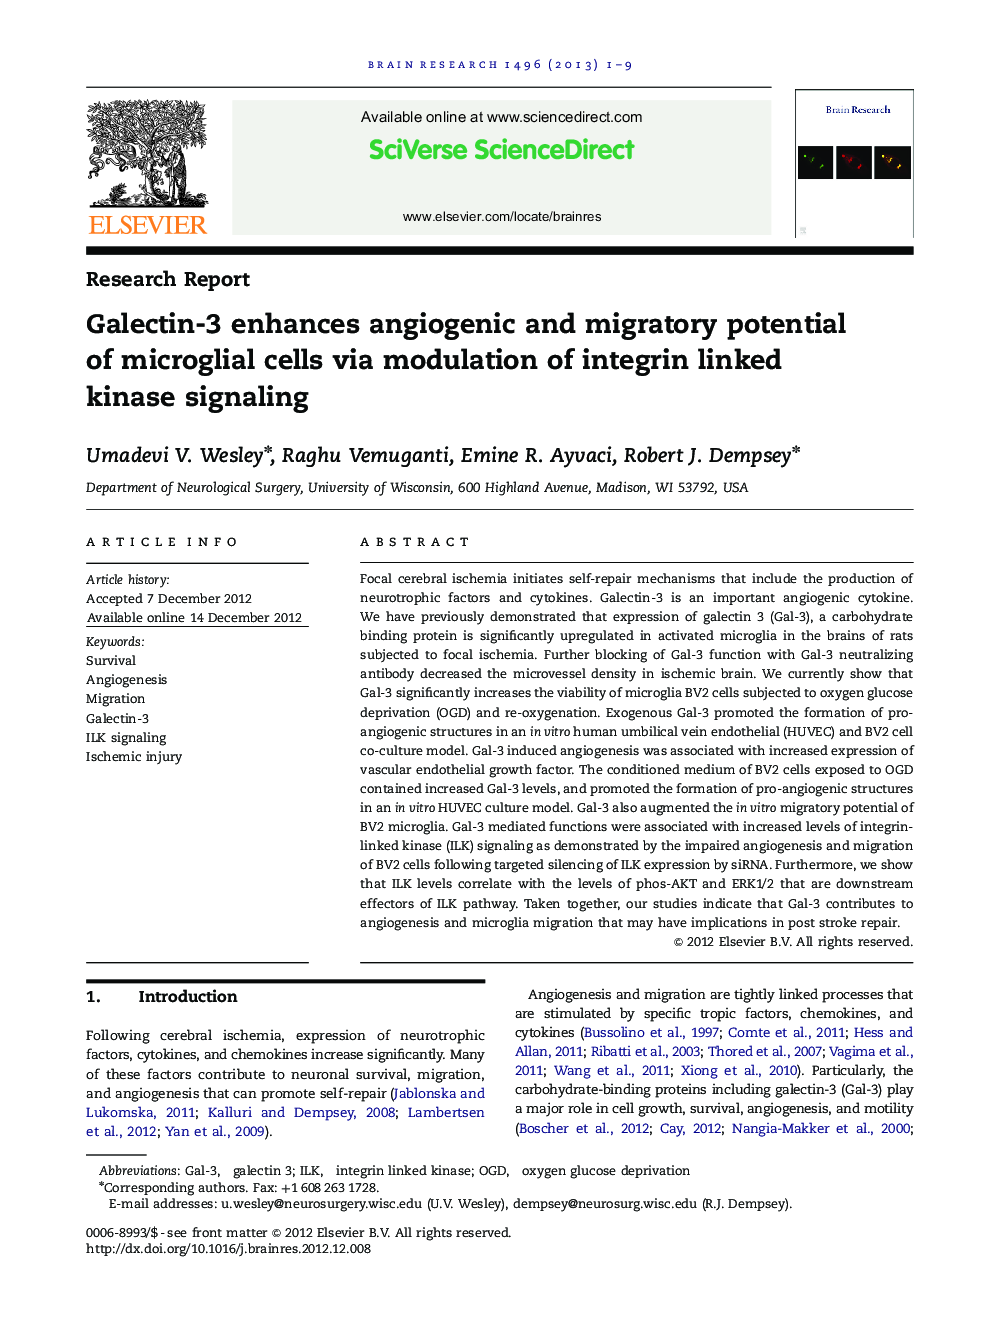 گزارش تحقیقاتی گالکتین-3 افزایش پتانسیل آنژیوژنیک و مهاجرت سلول های میکروگلالی را از طریق مدولاسیون سیگنالینگ کیناز مرتبط با انتگرال 